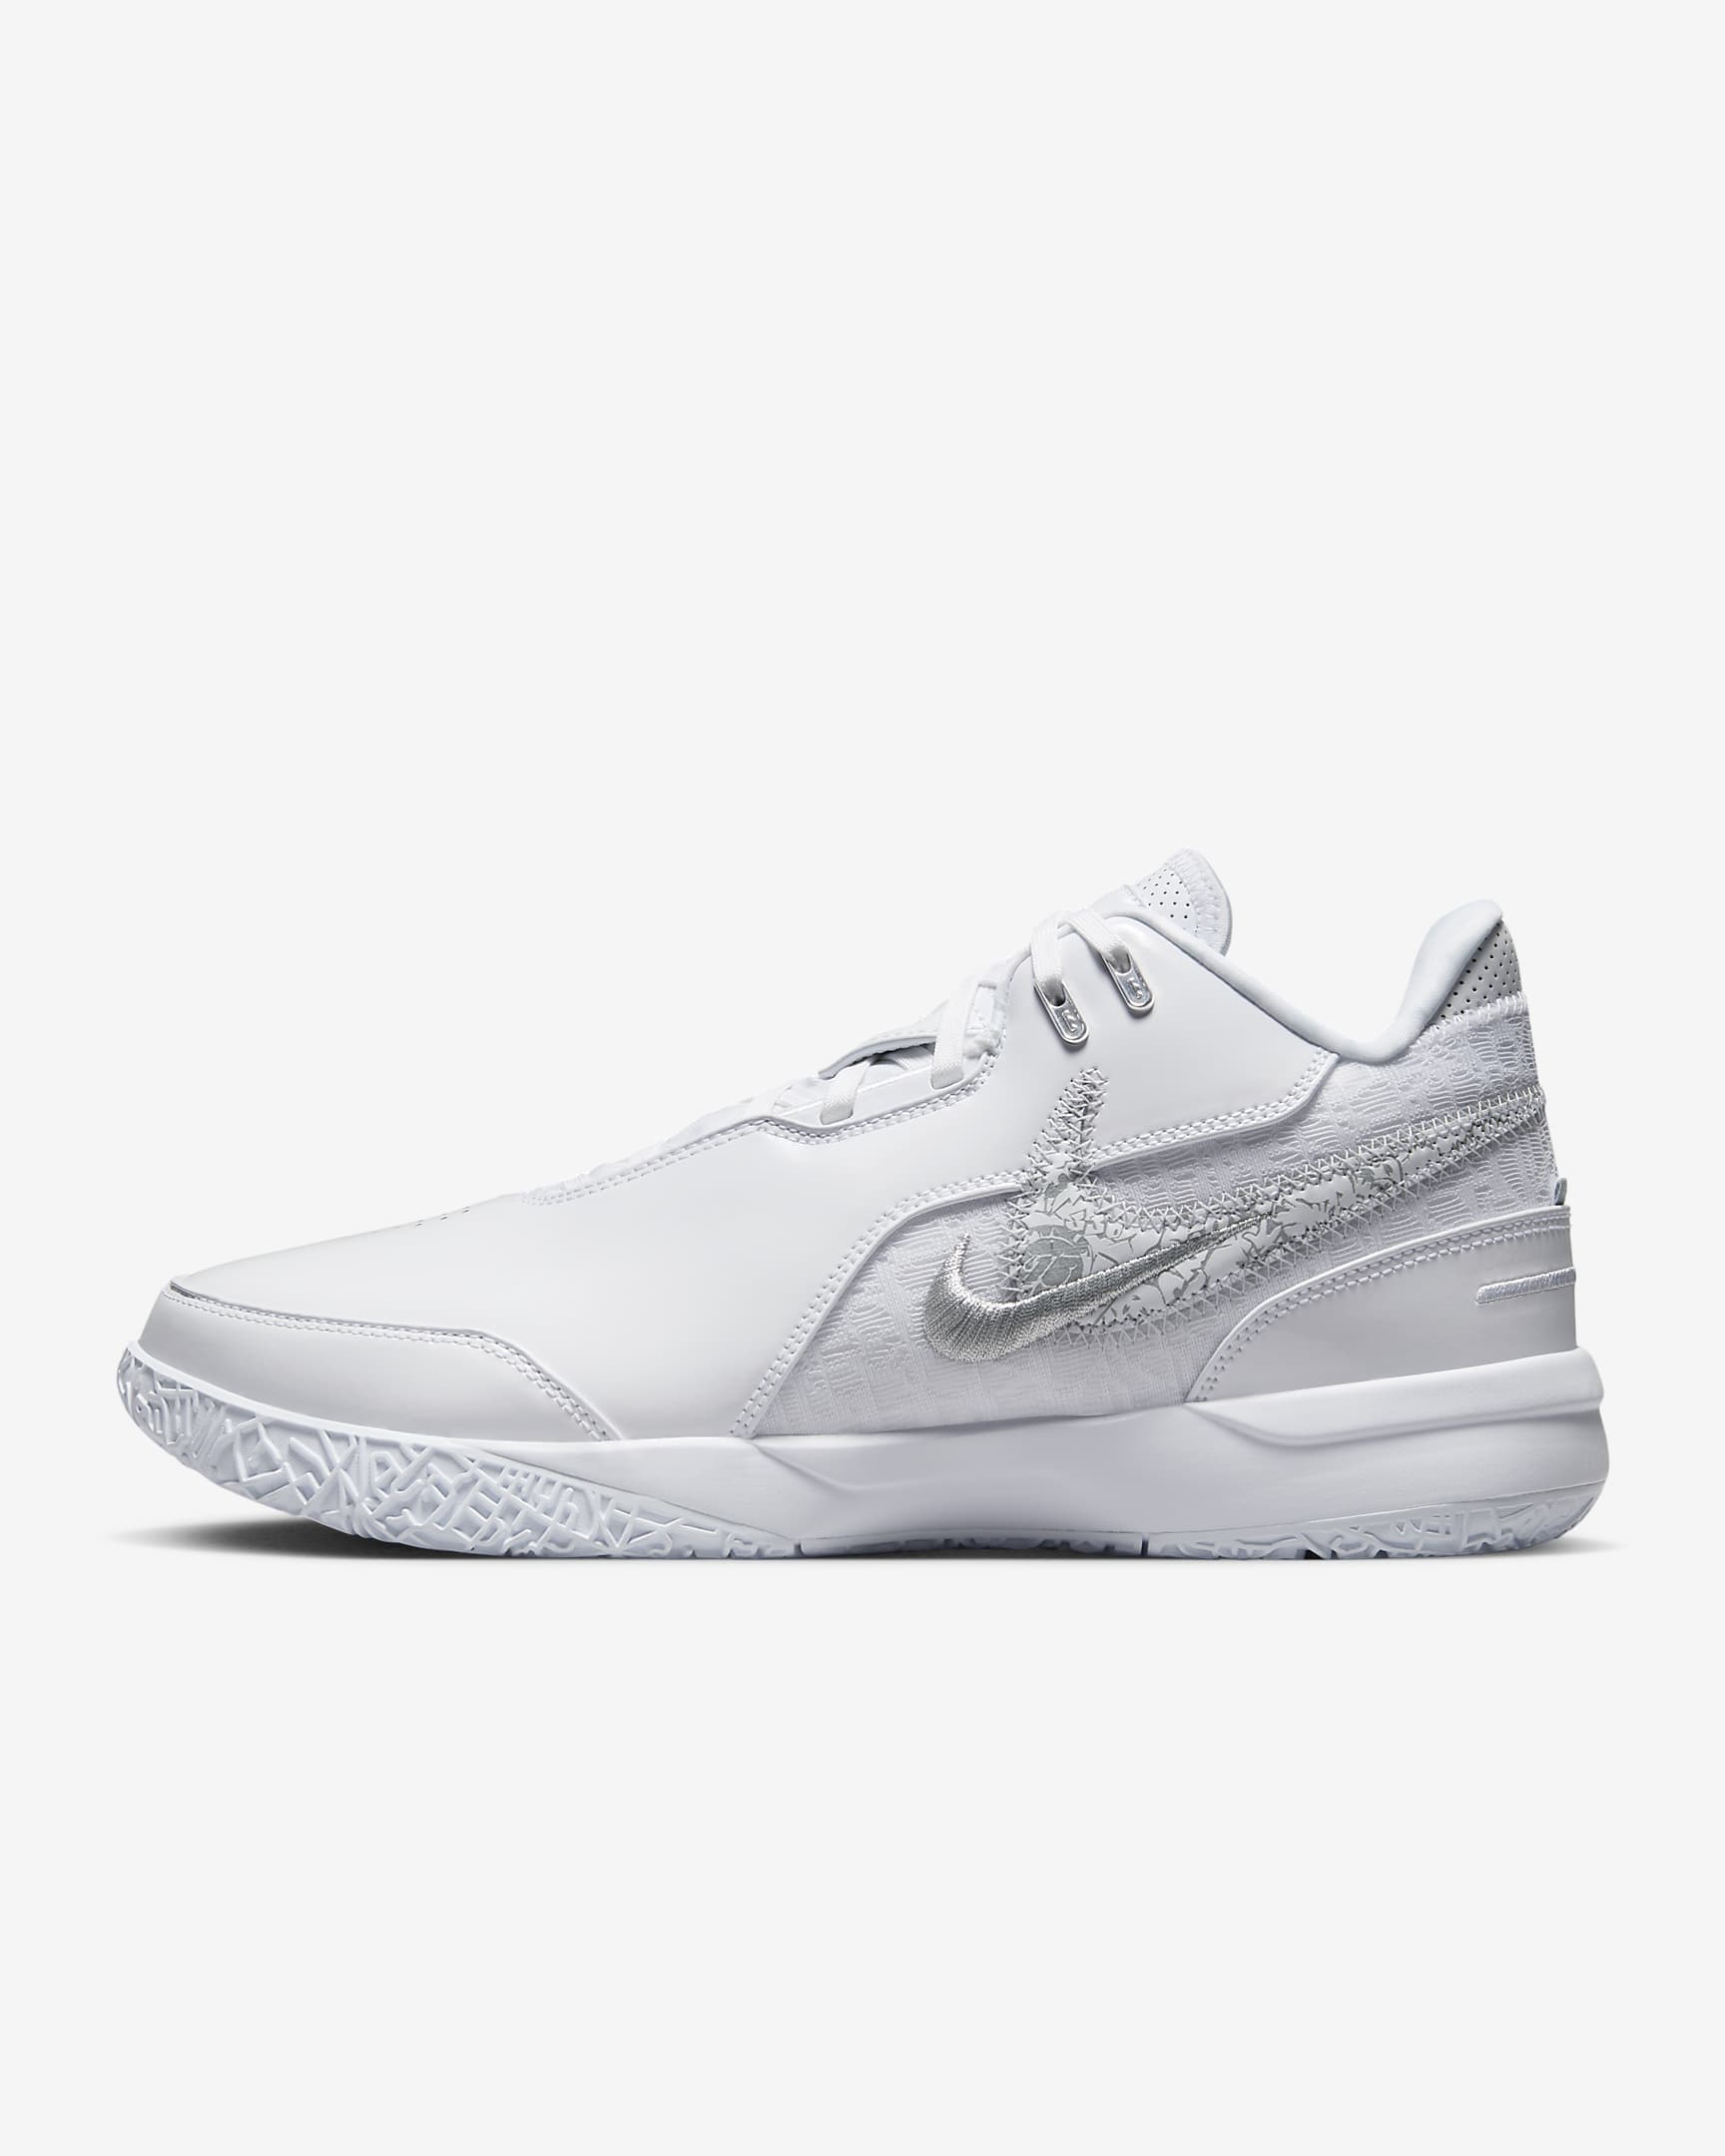 LeBron NXXT Gen AMPD Basketball Shoes - White/Metallic Silver/Light Smoke Grey